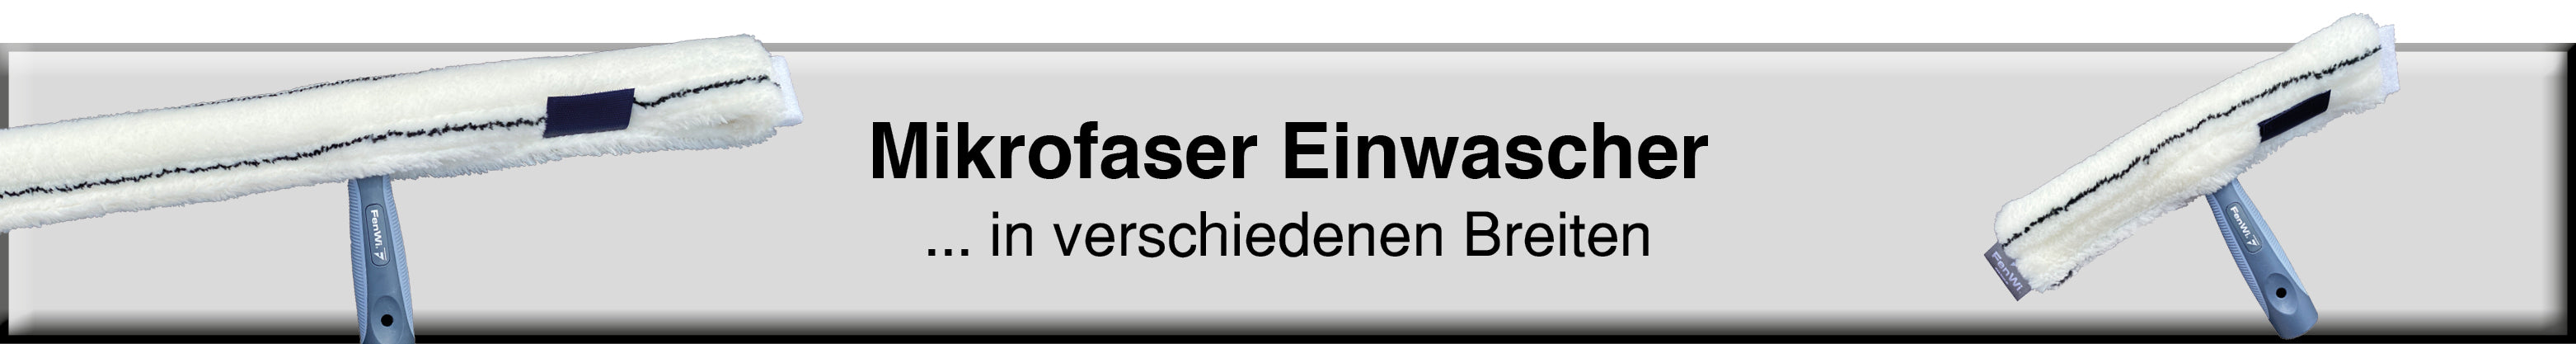 FenWi 6m Teleskop Fensterreiniger Set / Fenster & Solar / 45cm Wischer –  FenWi-Shop